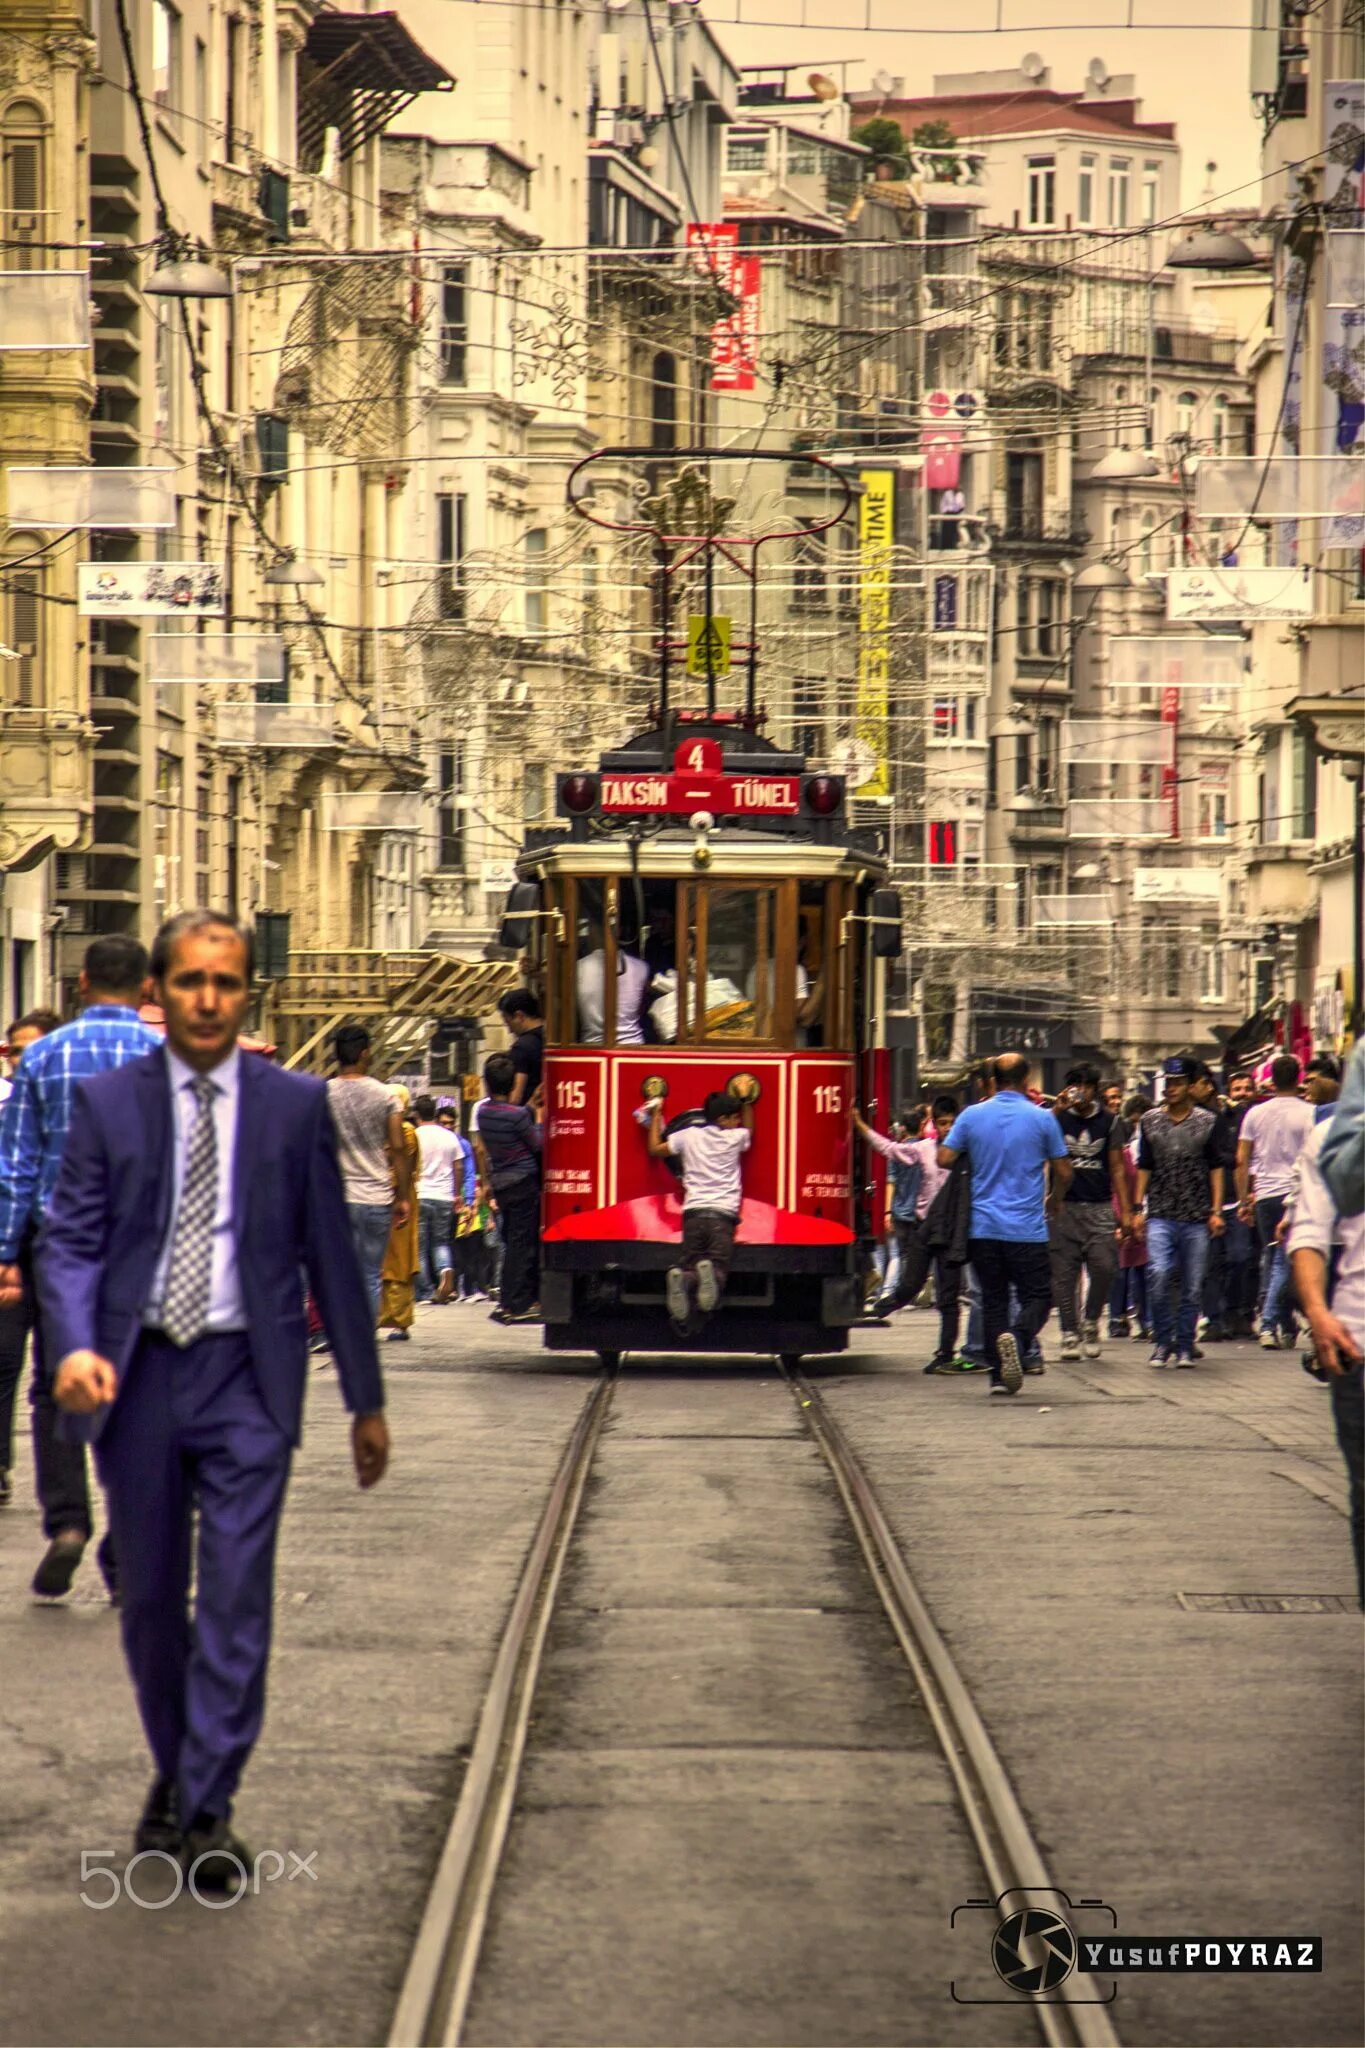 Истикляль. Истикляль Стамбул. Знаменитая улица Стамбула Истикляль. Площадь Истикляль в Стамбуле. Улица Истикляль в Стамбуле фото.